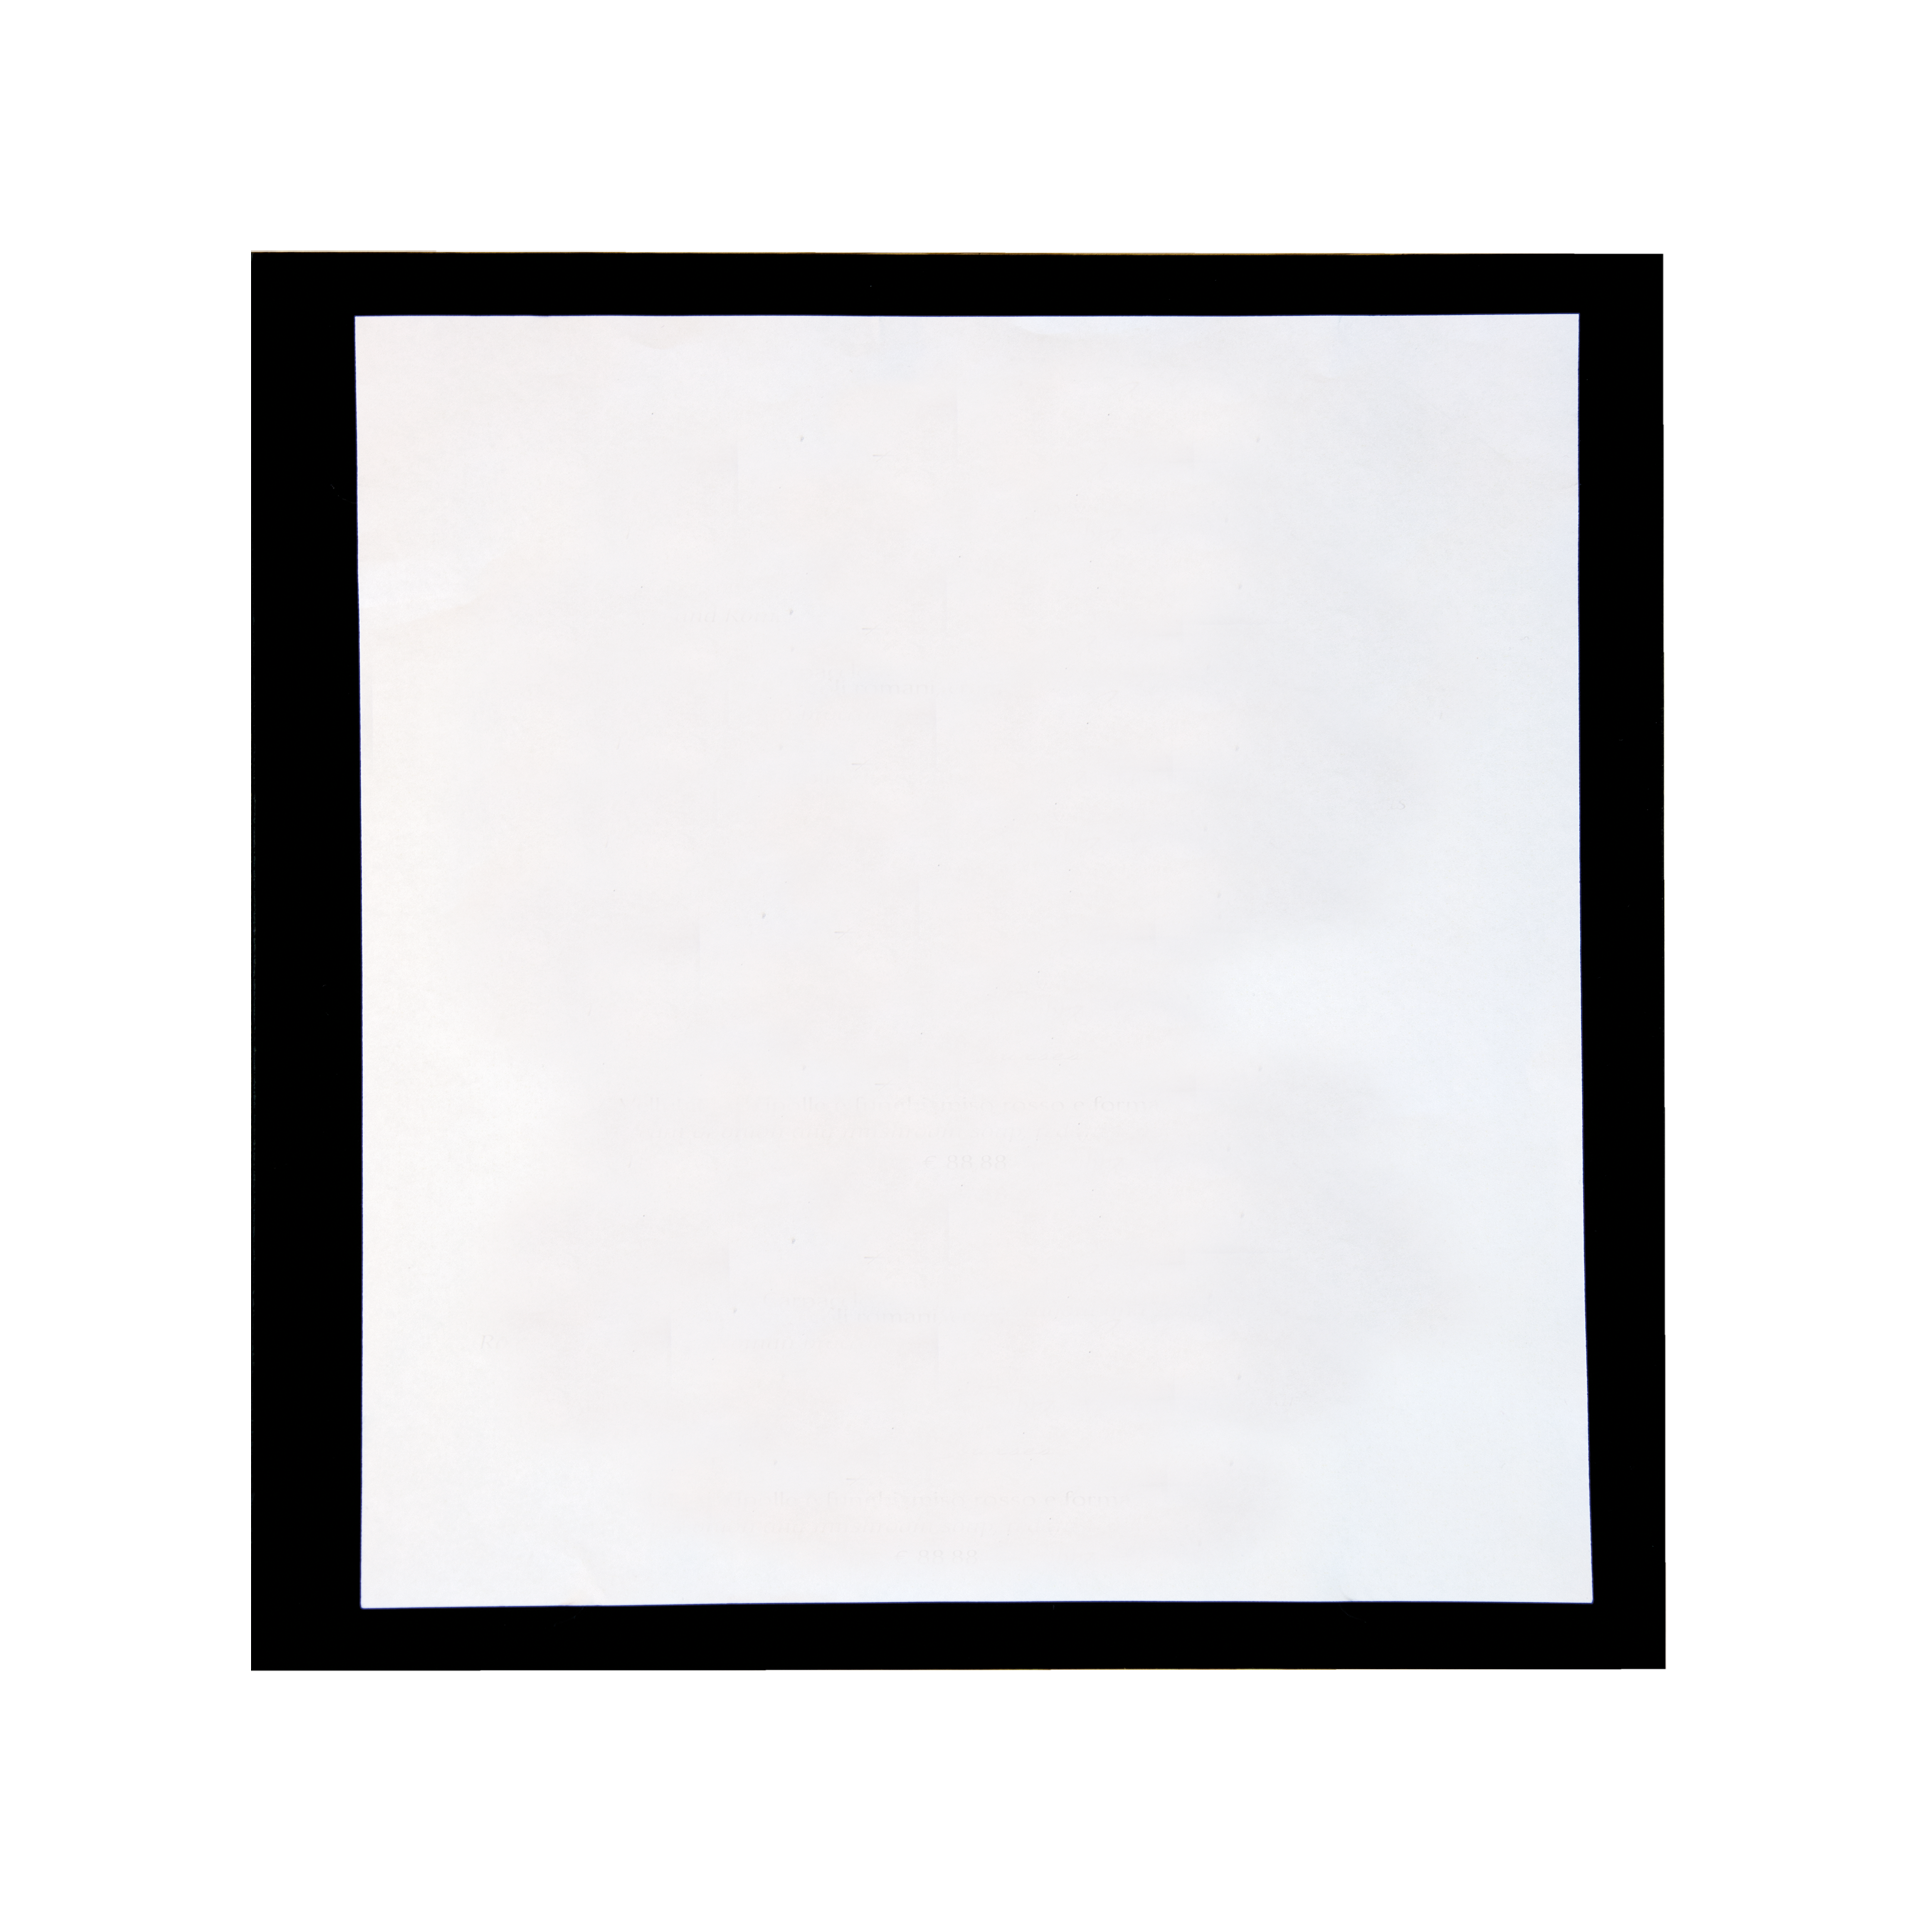 Innenflügel | La Carte Karton | DIN A55 quadro Farbe laut Farbfächer